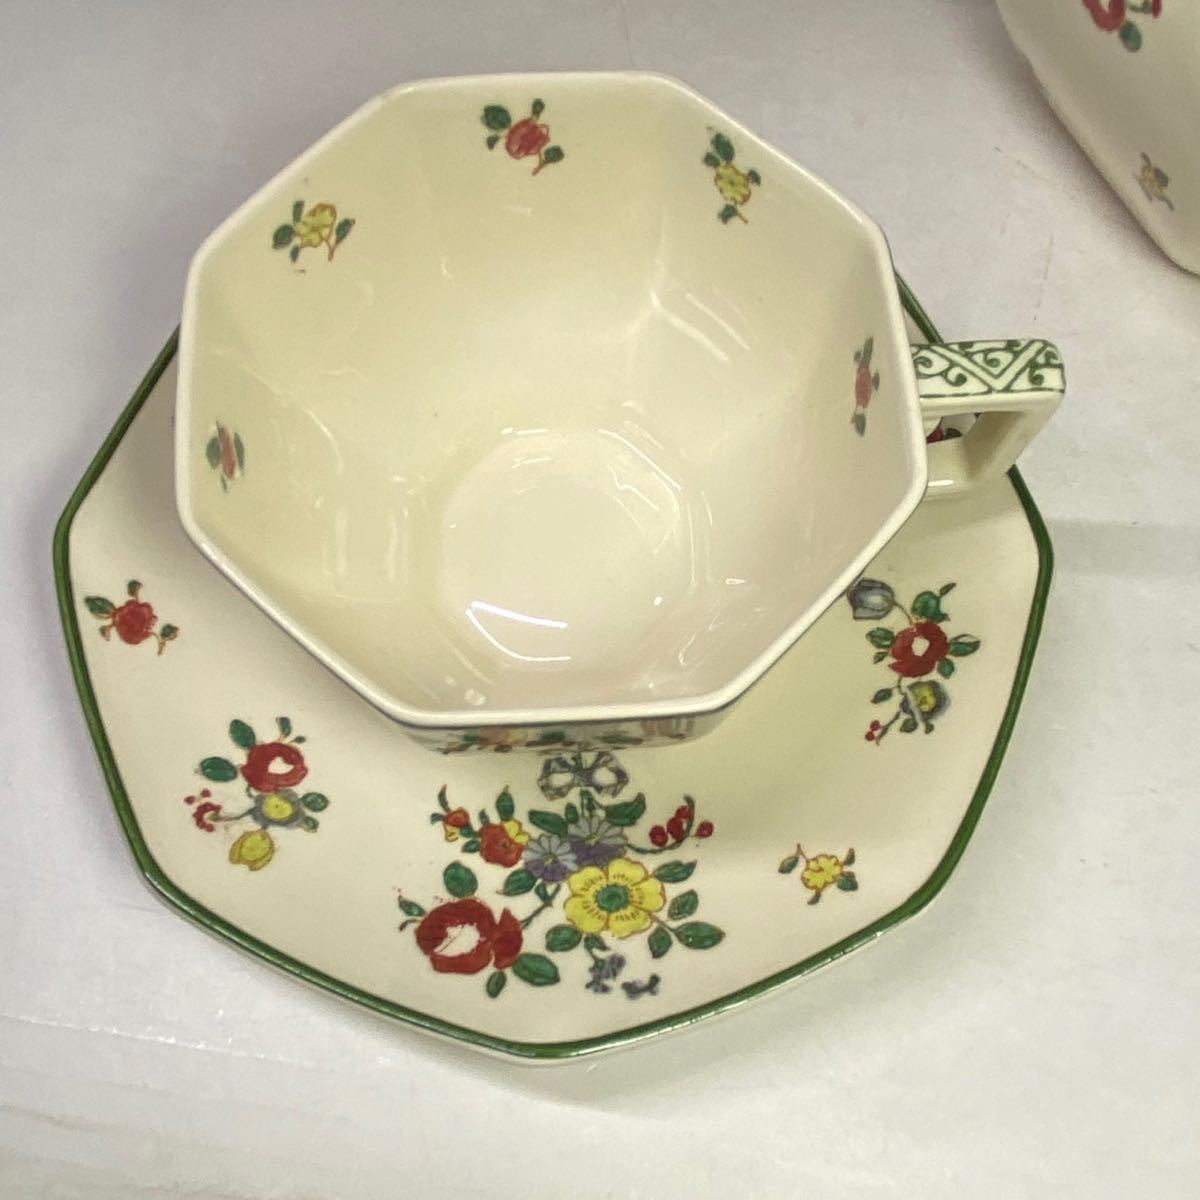  England antique Royal Doulton Britain teapot tea set cup & saucer cake plate flower bouquet 